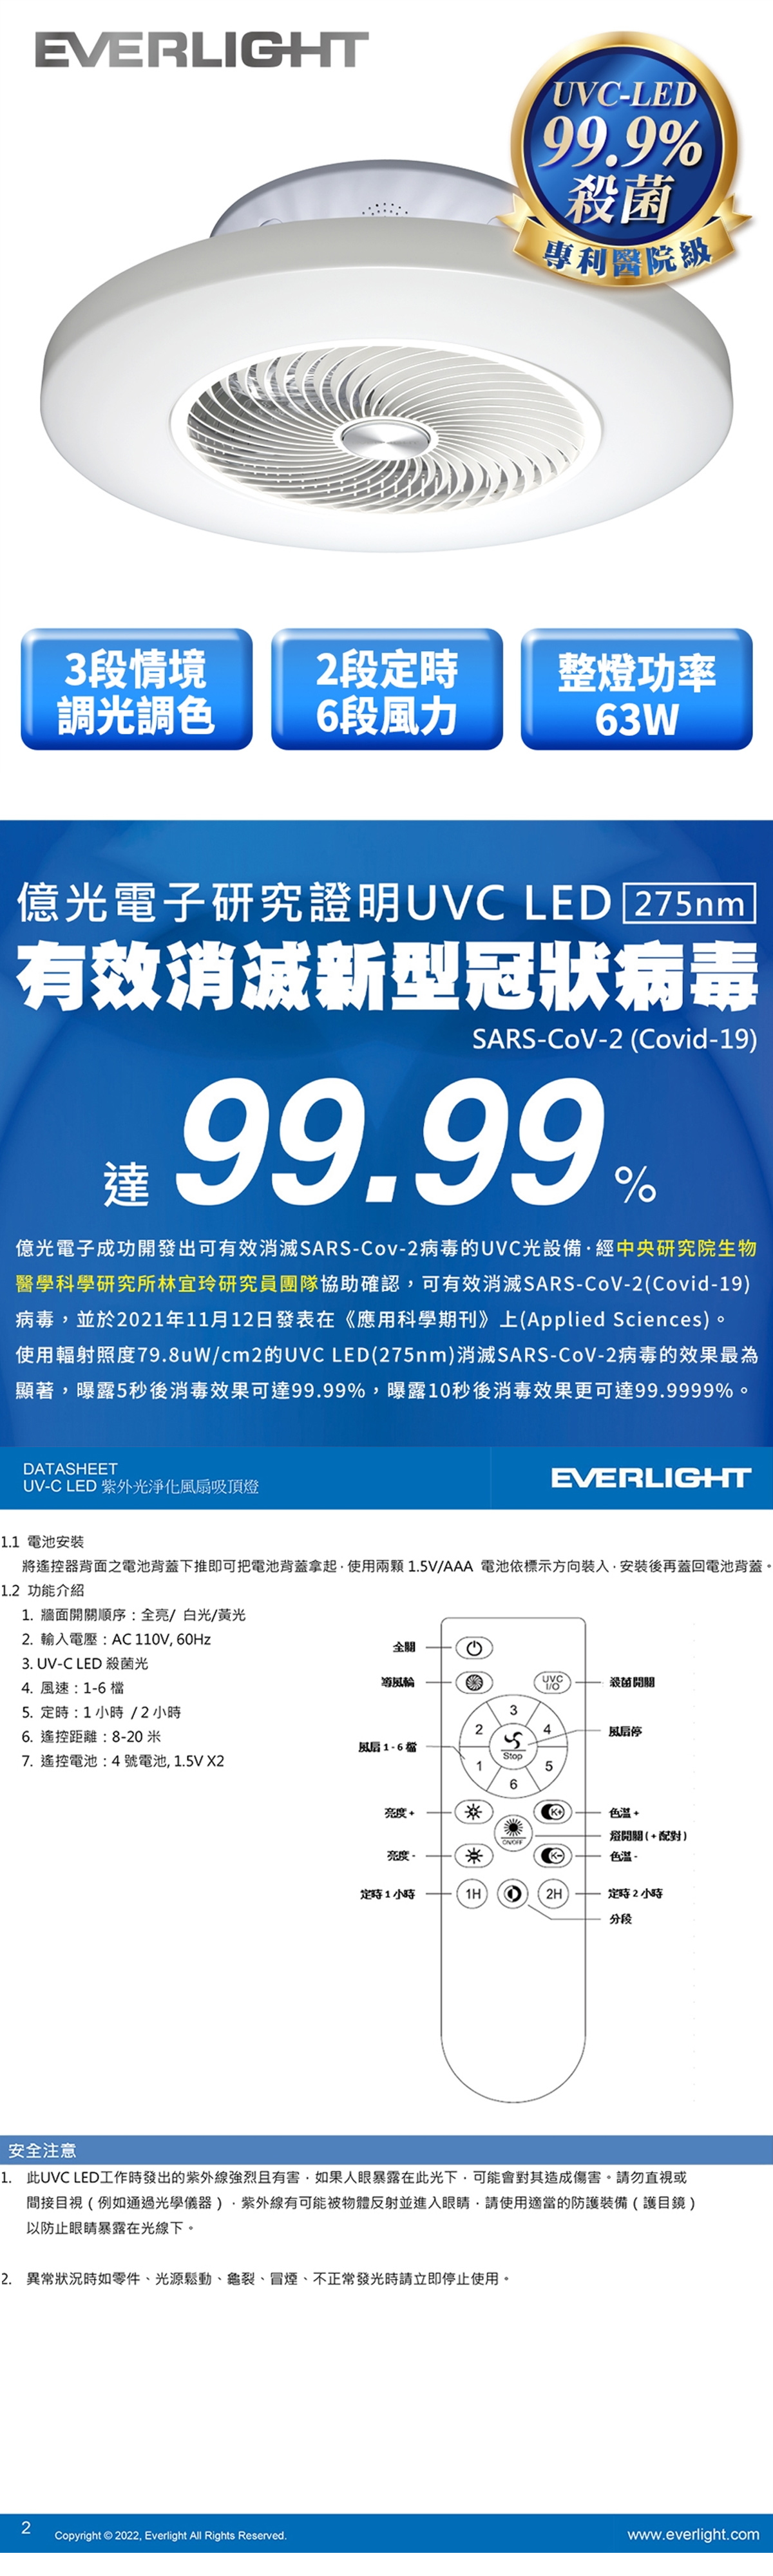 【億光】LED UV-C 63W 遙控 紫外光空氣淨化風扇吸頂燈 電壓110V